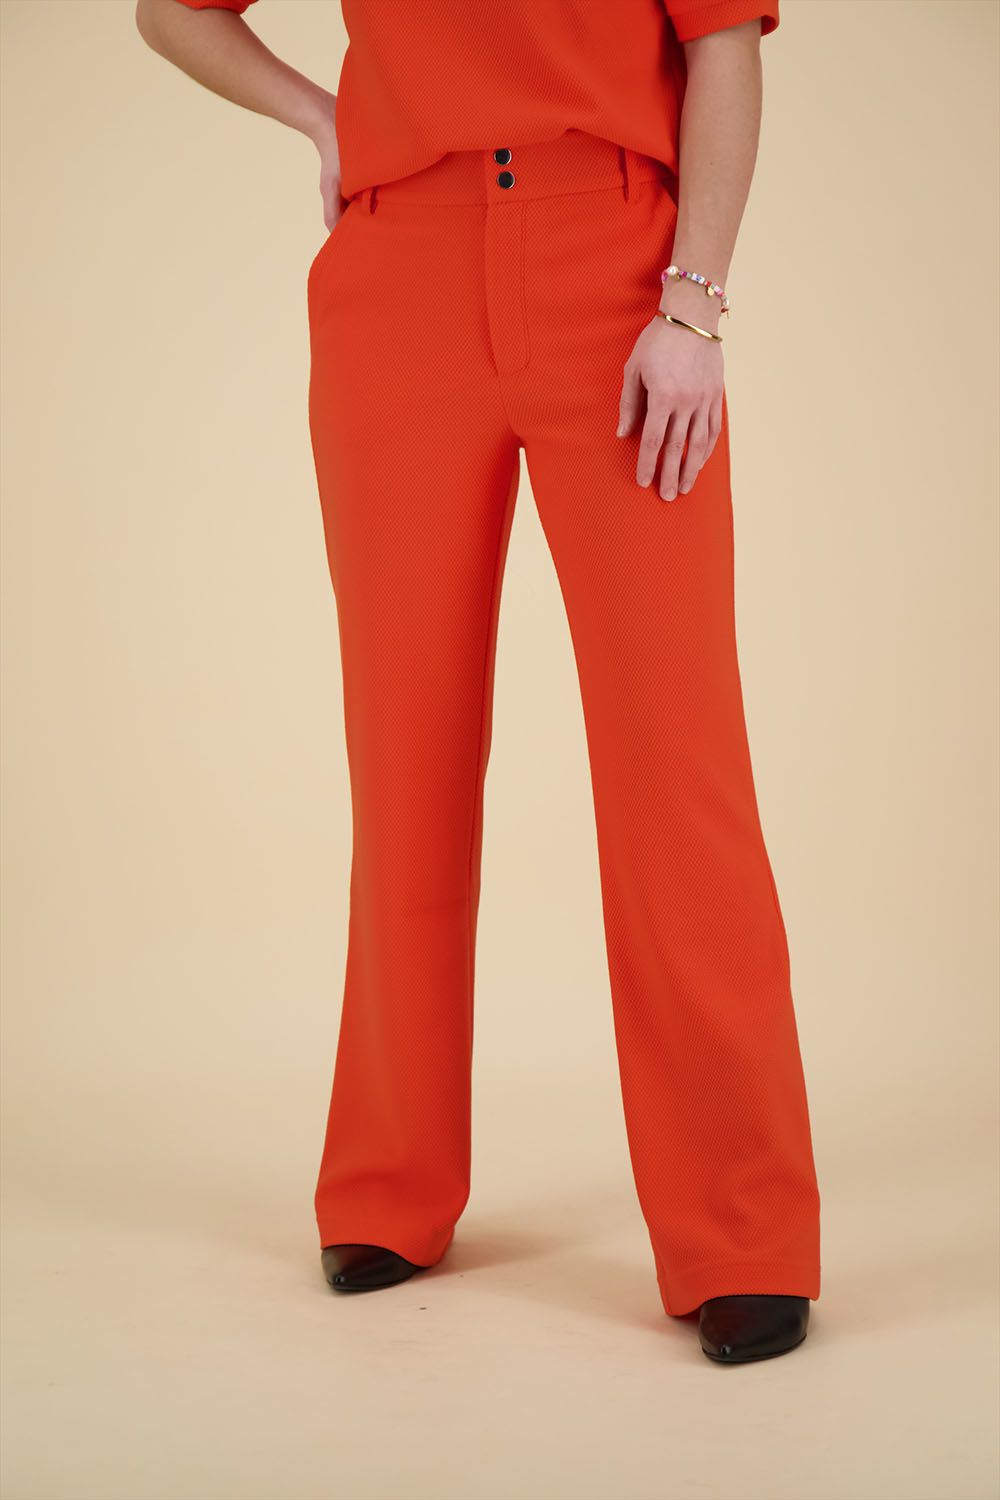 Geisha Pantalon Comfy Oranje